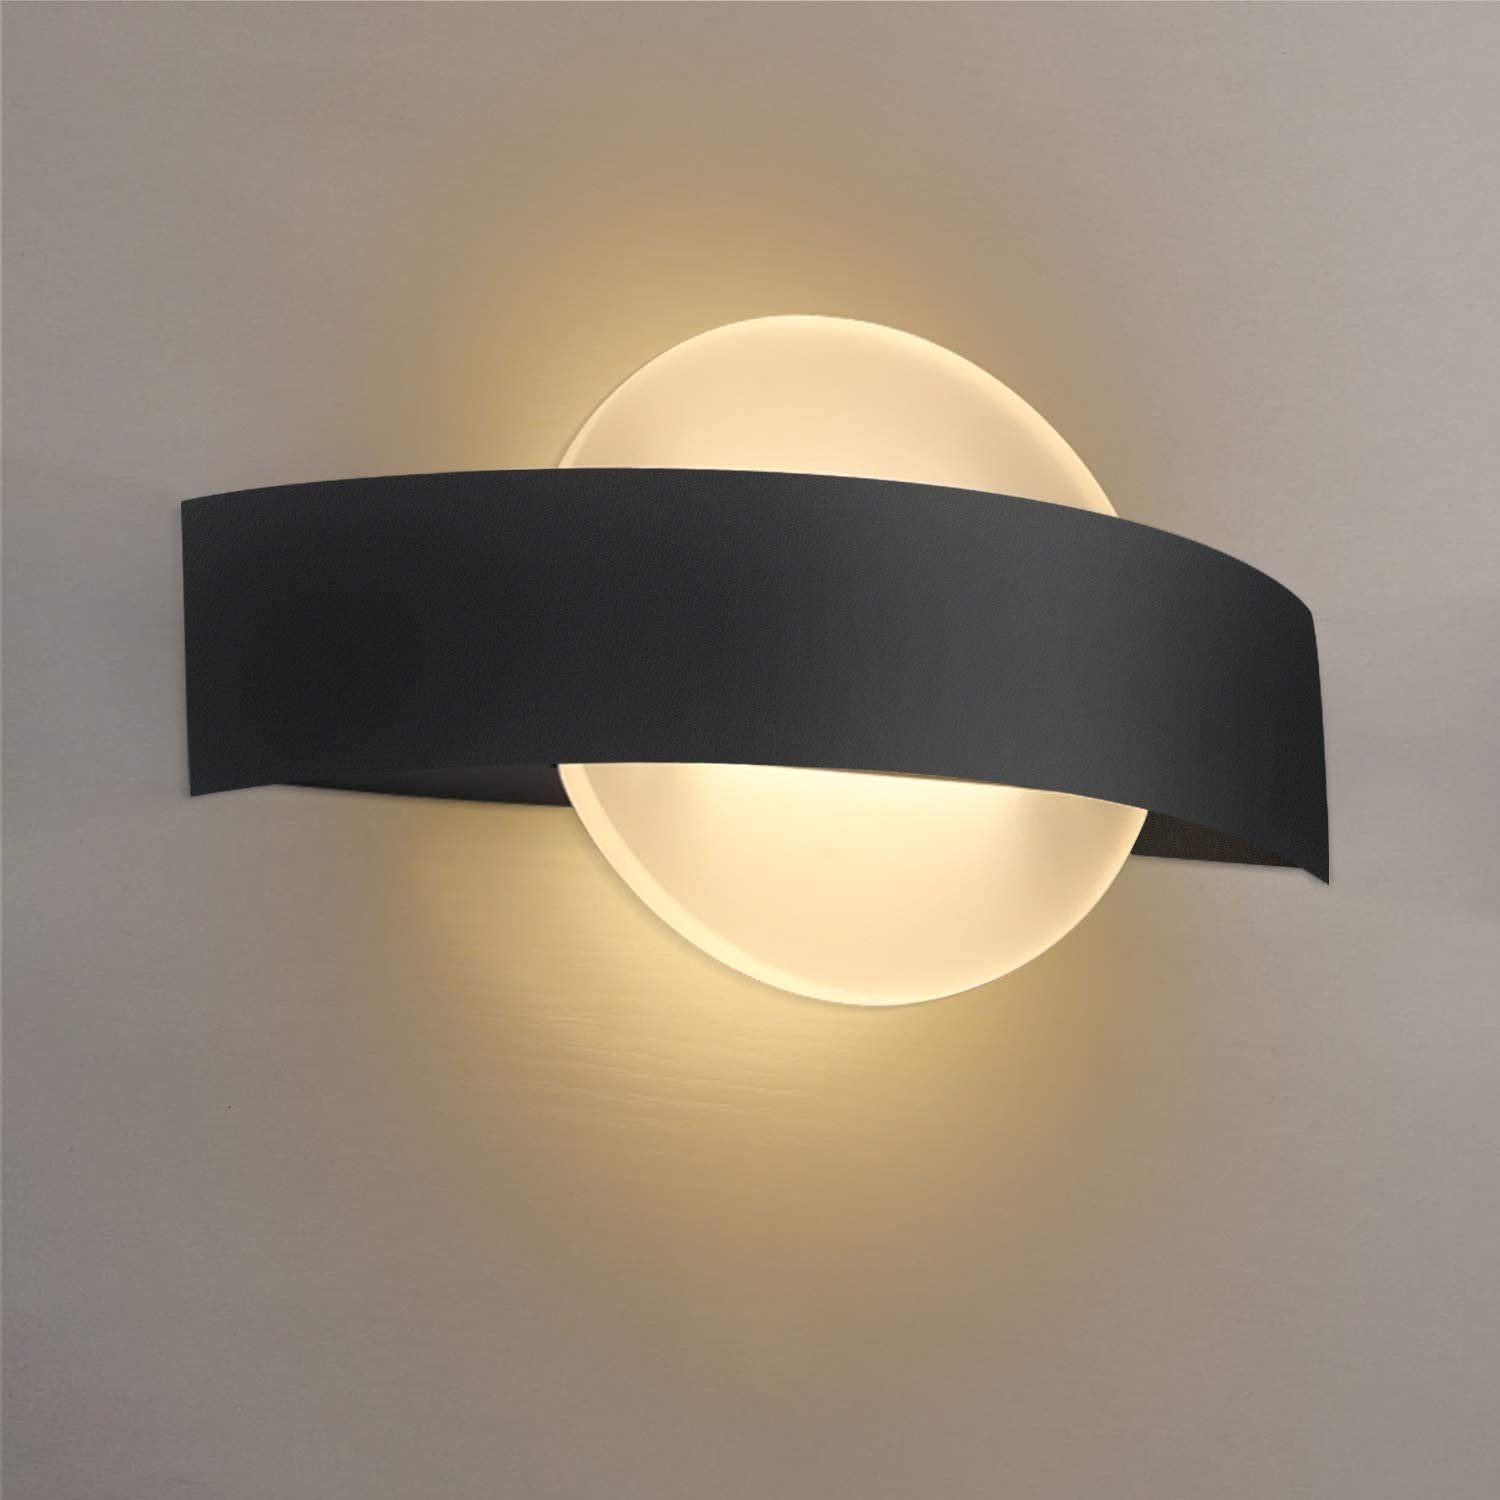 LED Luxus Wand Leuchten Schalter Schlaf Wohn Zimmer Flur Büro Lampen verstellbar 